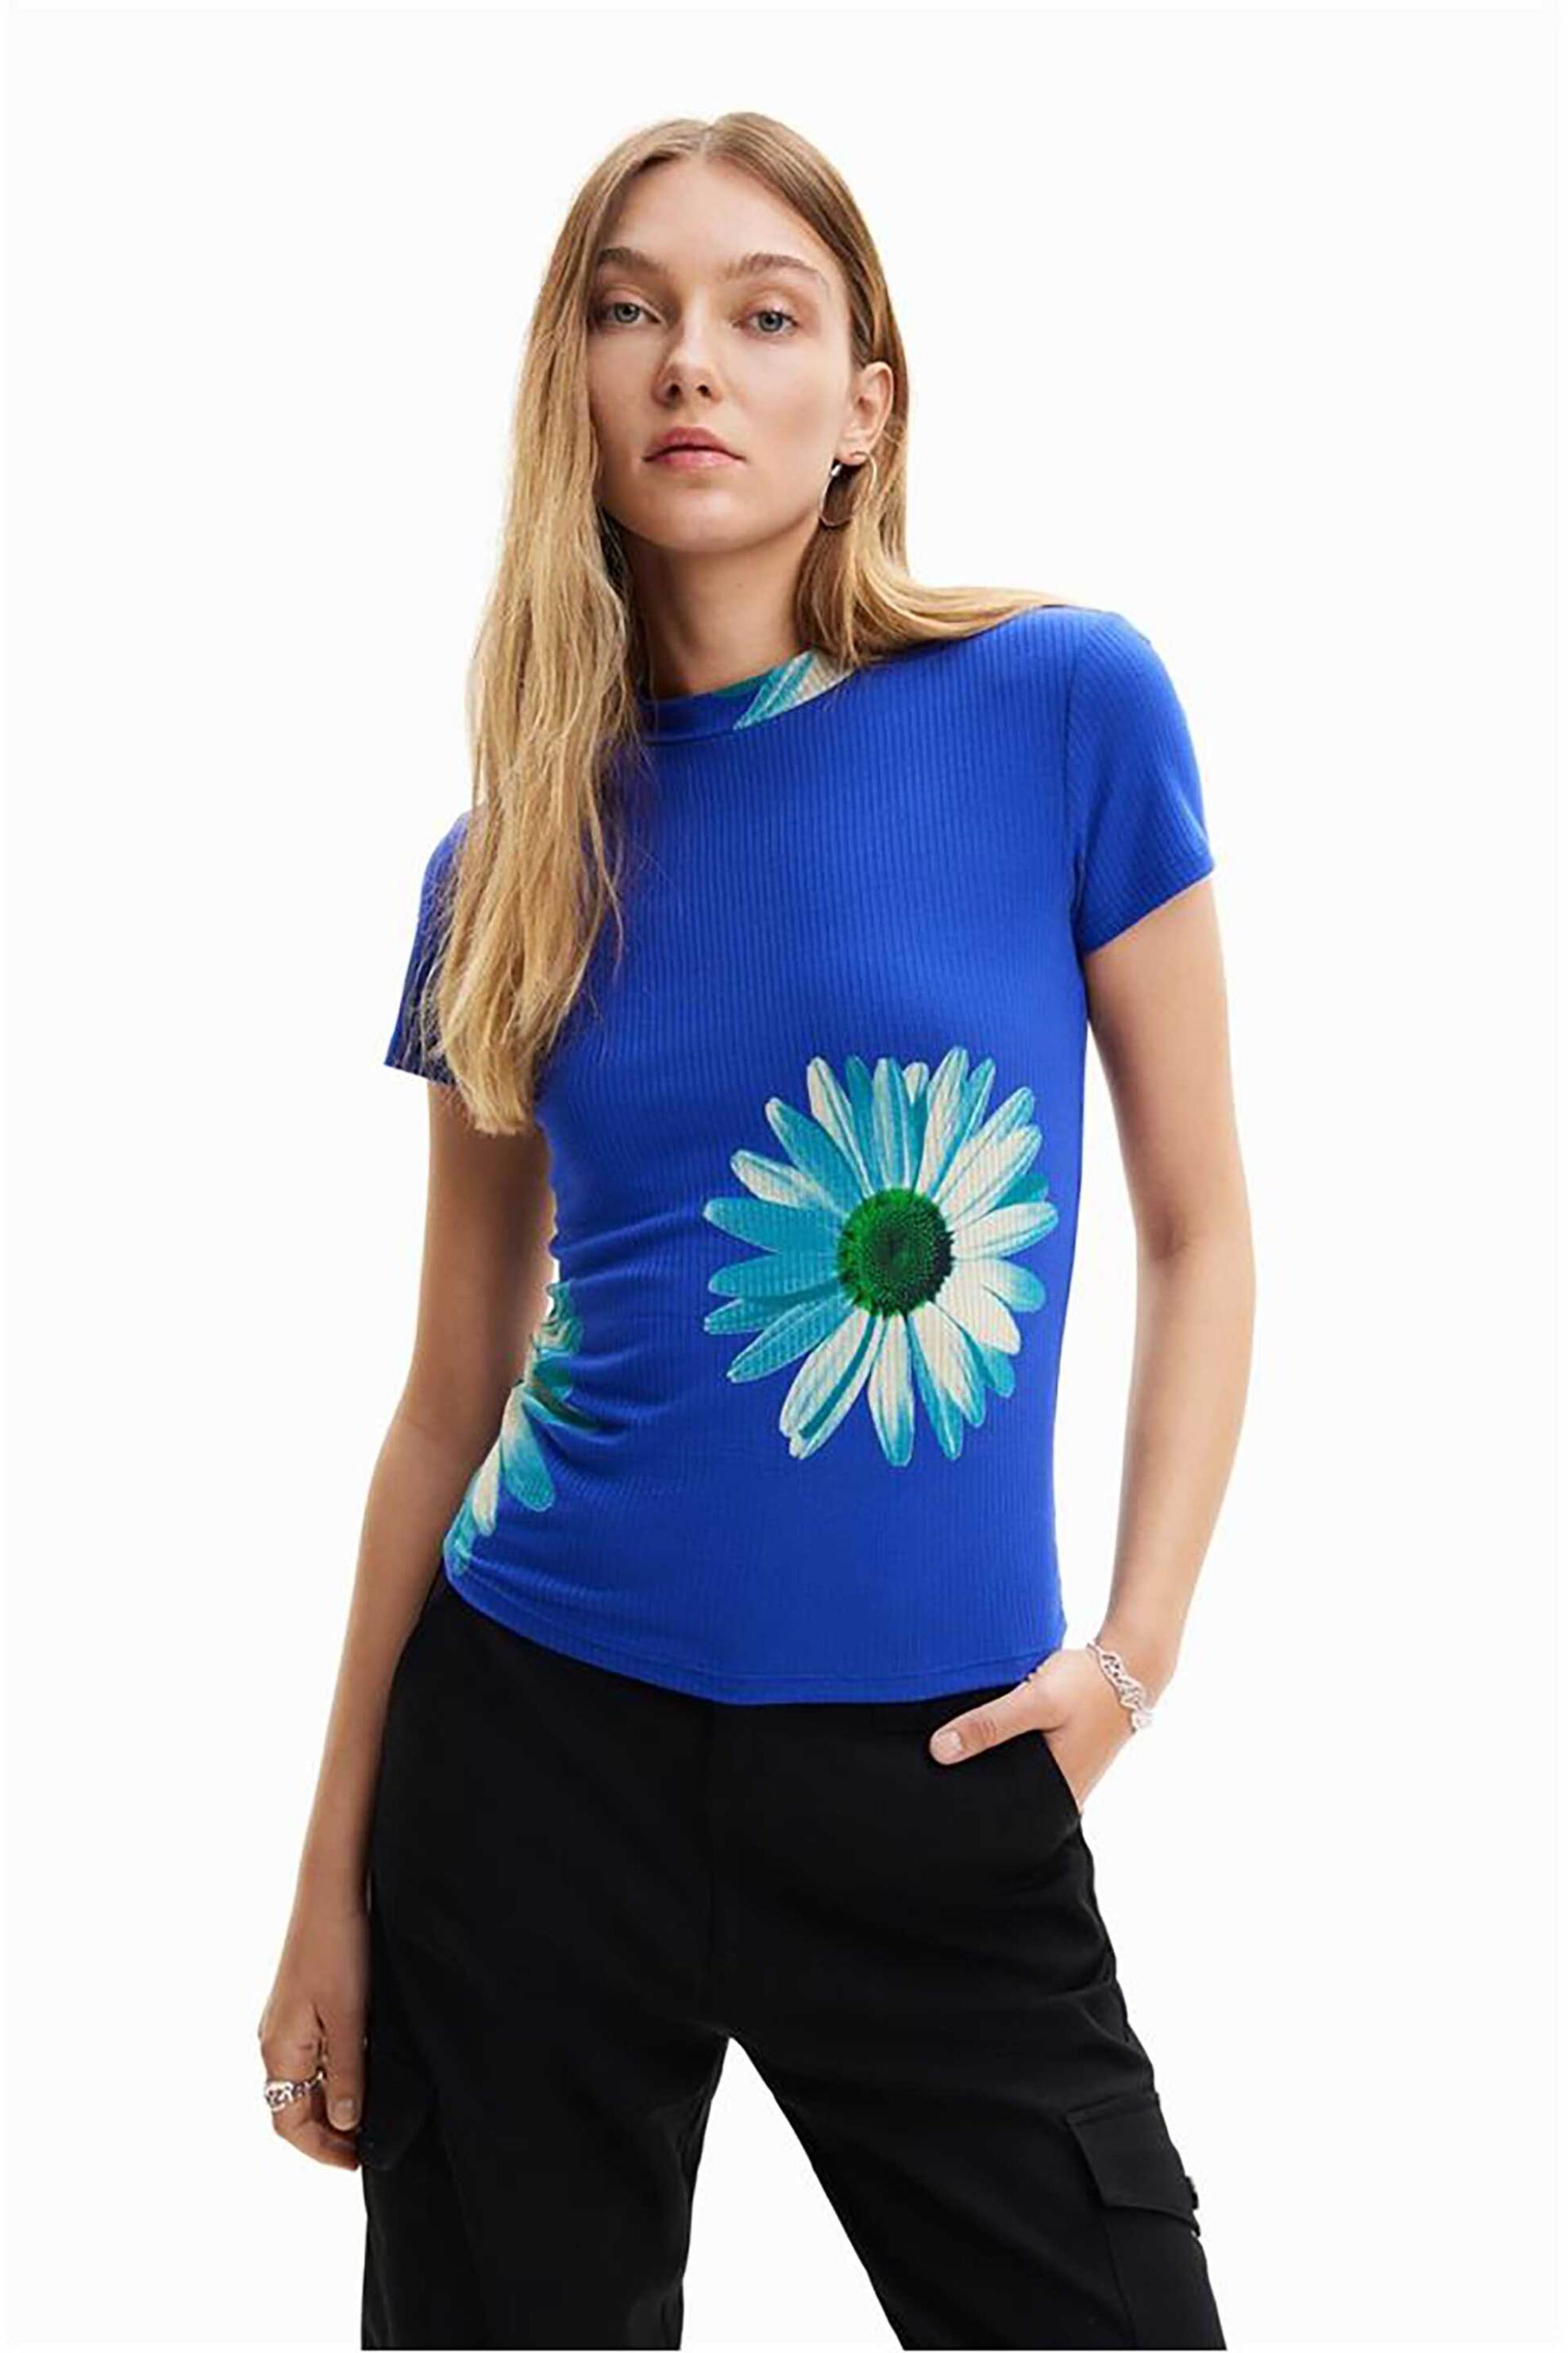 Γυναικεία Ρούχα & Αξεσουάρ > Γυναικεία Ρούχα > Γυναικεία Τοπ > Γυναικεία T-Shirts Desigual γυναικείο T-shirt με all-over ribbed υφή και daisies print "Margaritas" - 24SWTKAV Μπλε Ηλεκτρίκ